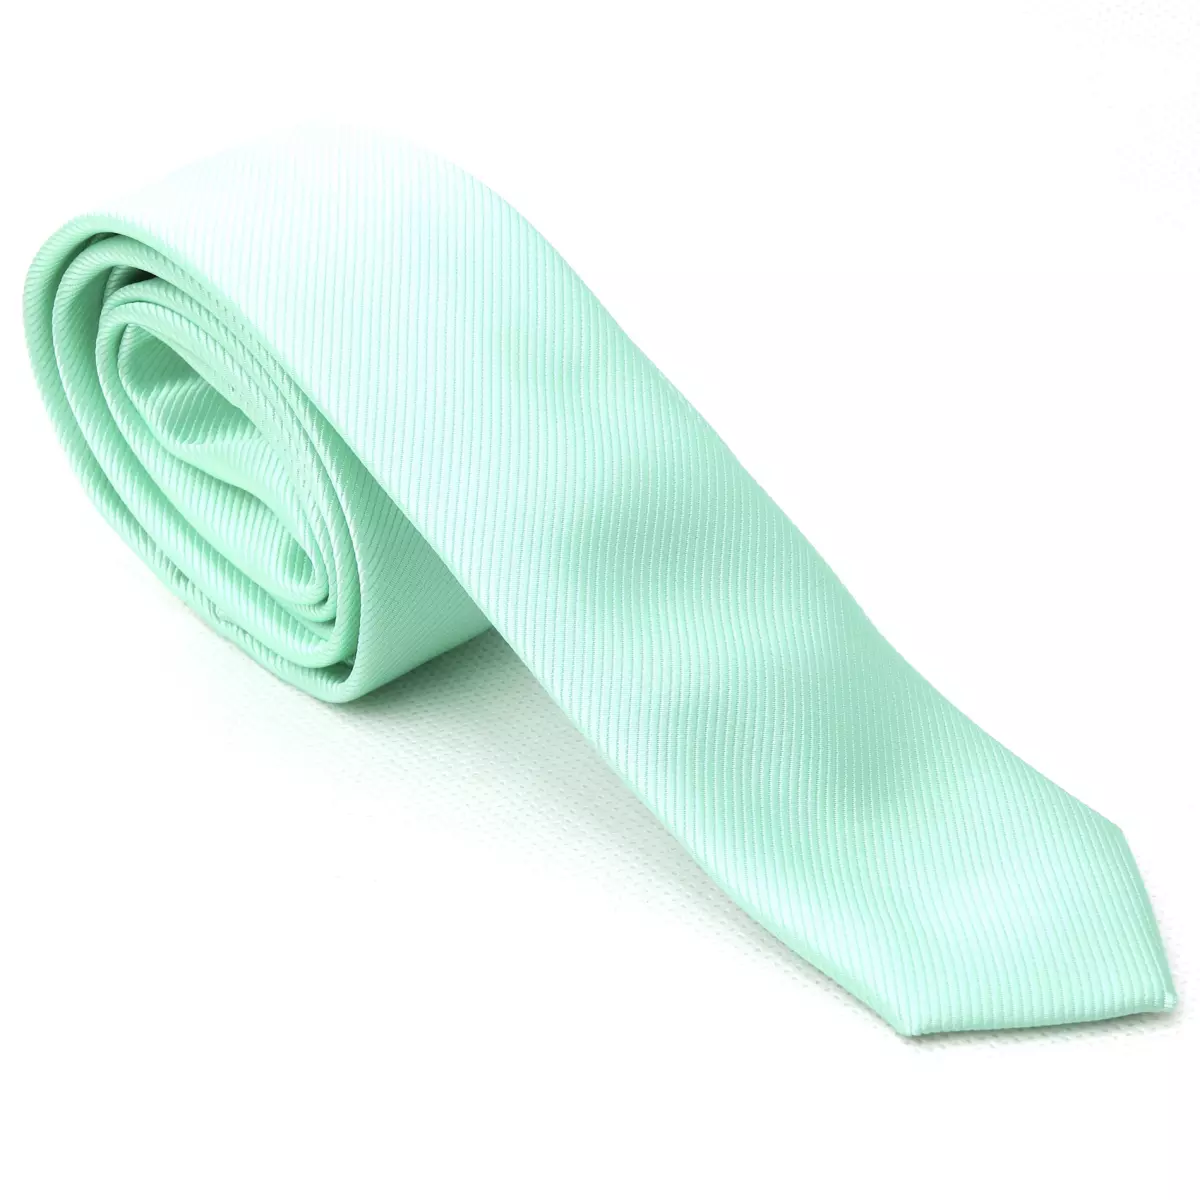 Kravata pánská zelená s texturou